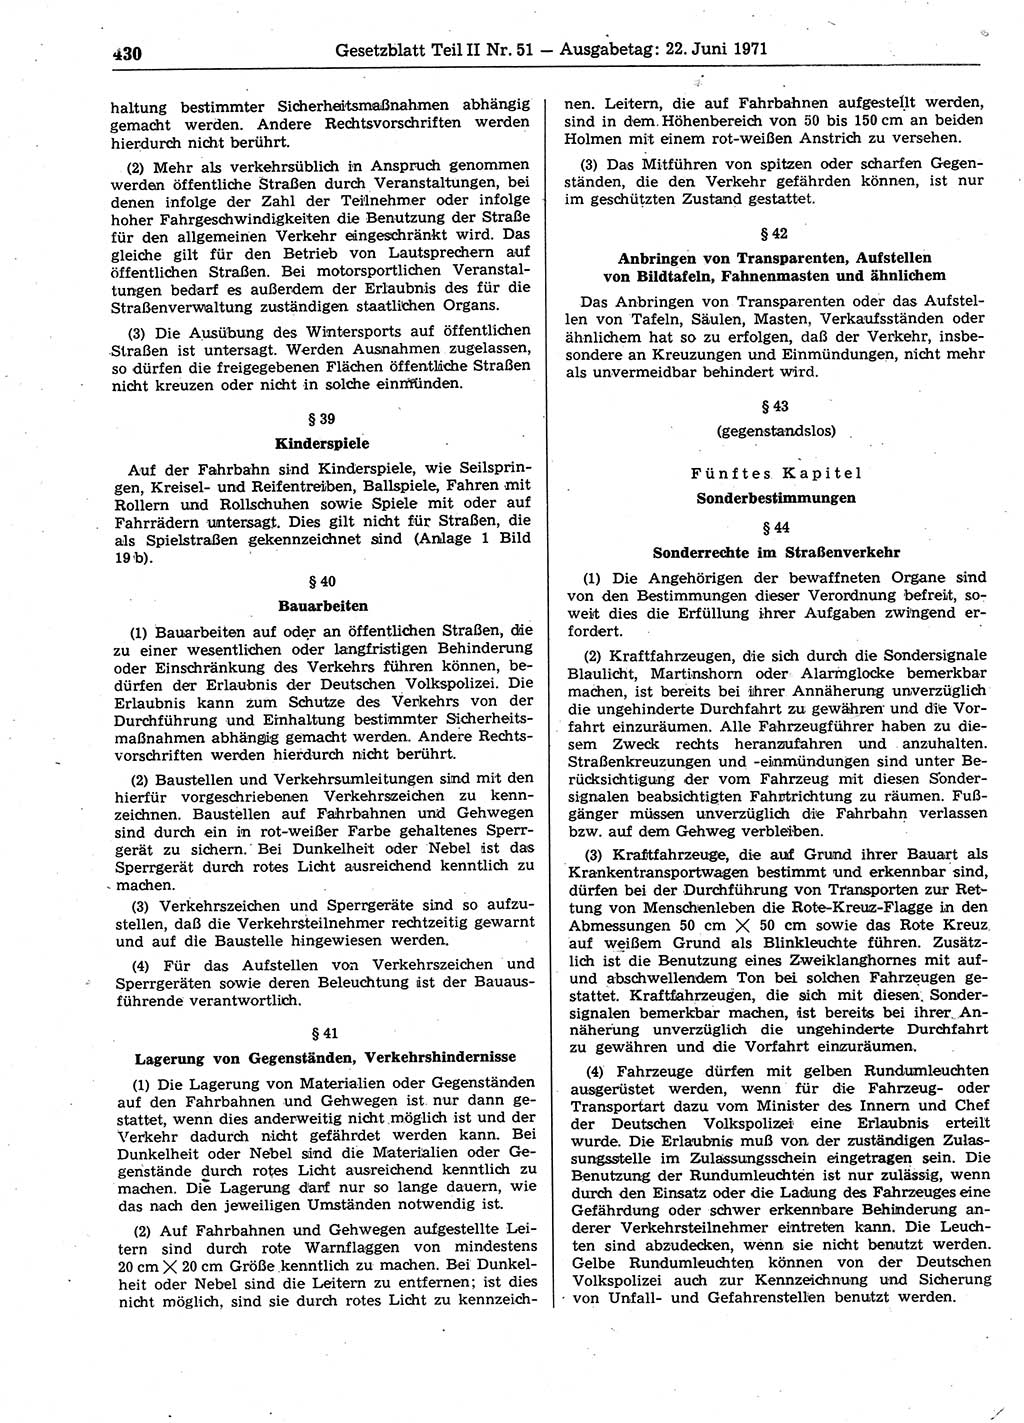 Gesetzblatt (GBl.) der Deutschen Demokratischen Republik (DDR) Teil ⅠⅠ 1971, Seite 430 (GBl. DDR ⅠⅠ 1971, S. 430)